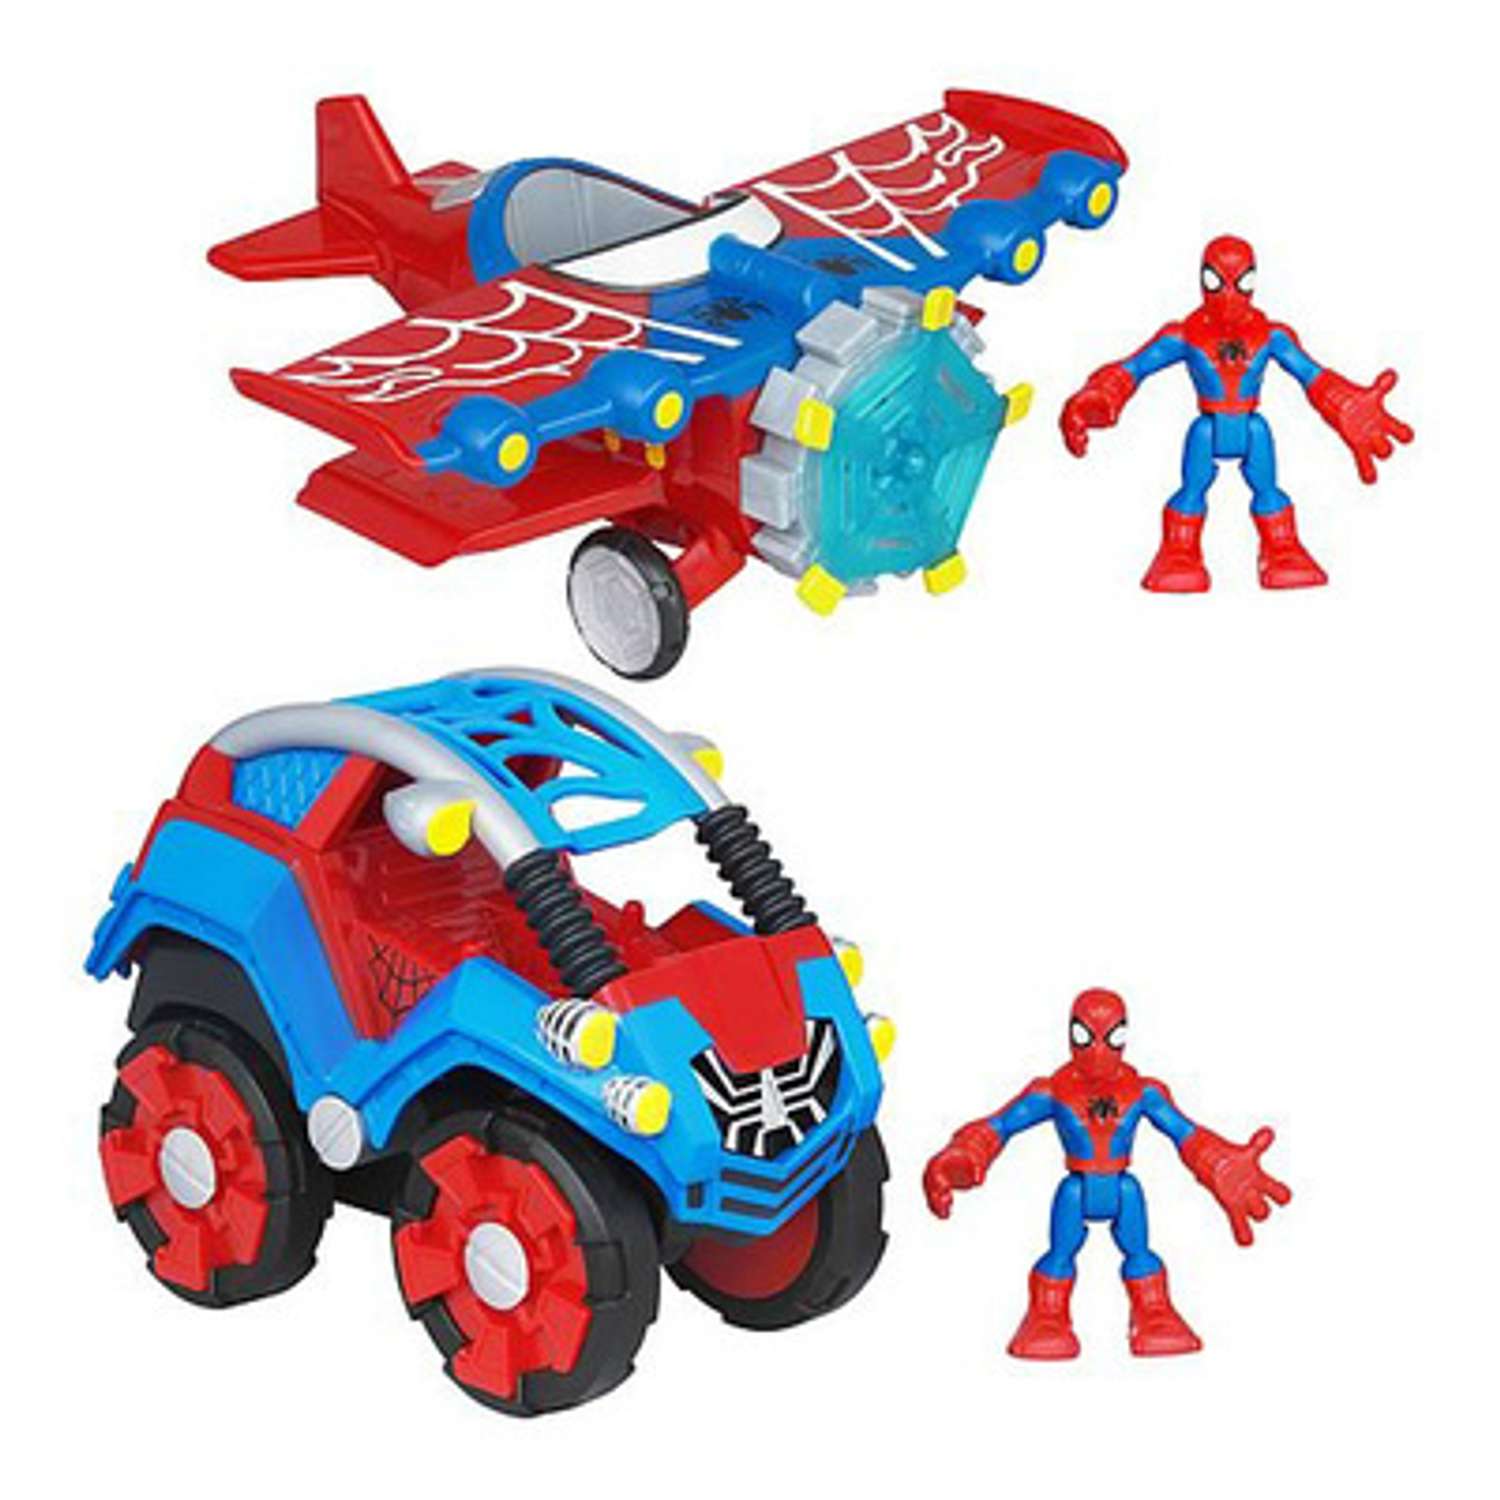 Фигурка и транспортное средство Человека-Паука Hasbro в ассортименте - фото 1